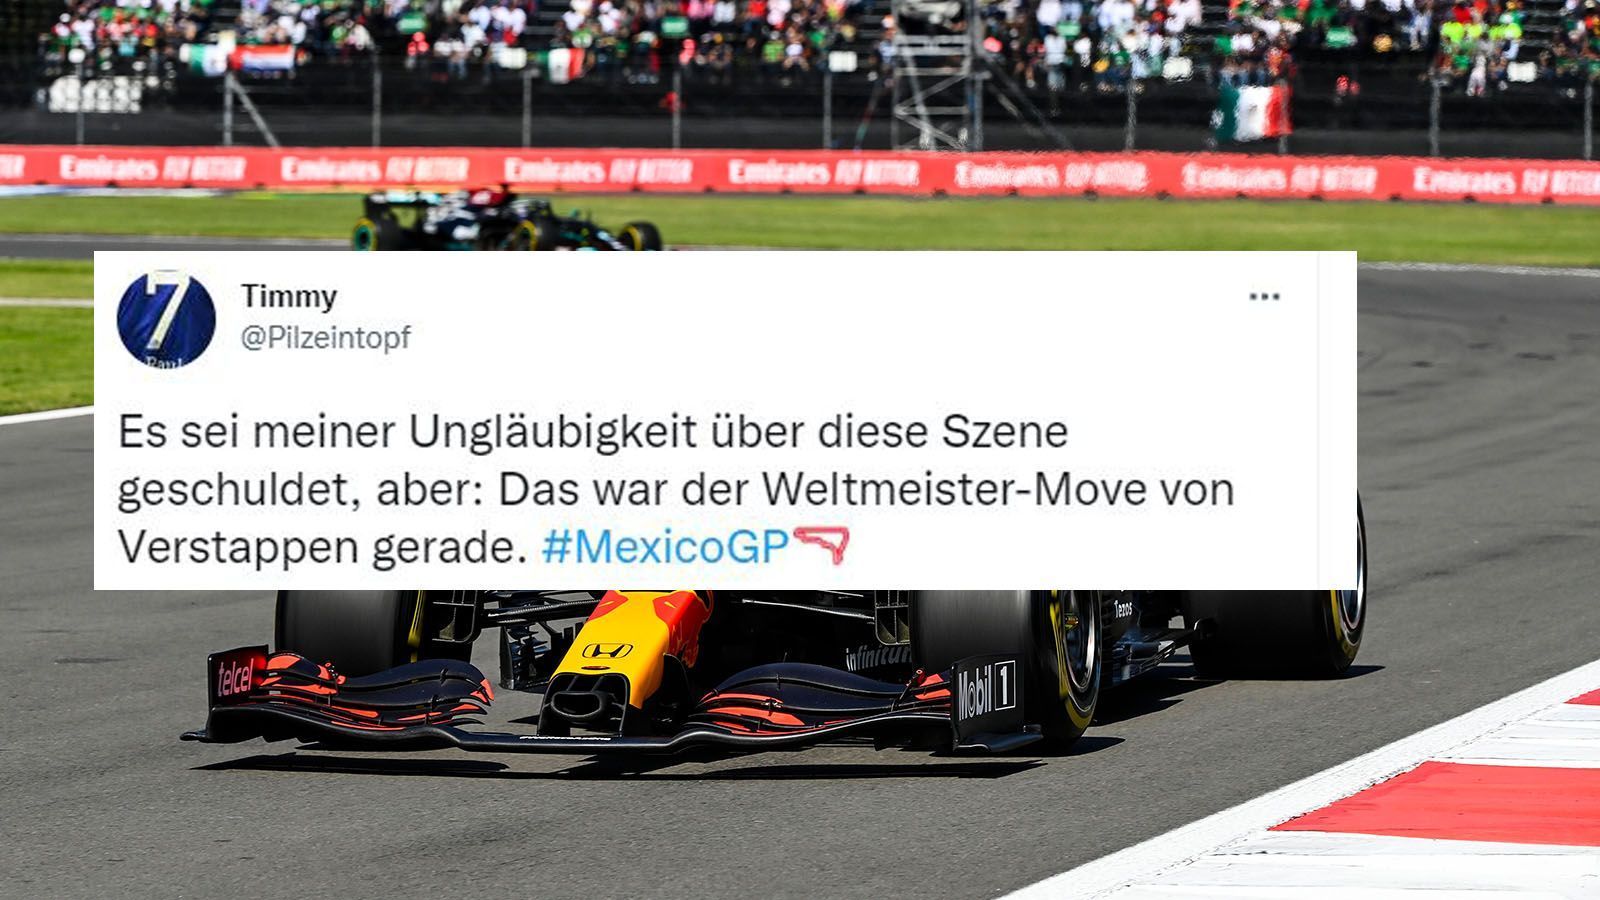 
                <strong>Netzreaktionen zum Mexiko-GP</strong><br>
                Mit einem starken Brems-Manöver katapultiert sich Max Verstappen in der ersten Kurve an die Spitze und fährt danach souverän seinem Sieg entgegen. Eine weltmeisterliche Leistung. 
              